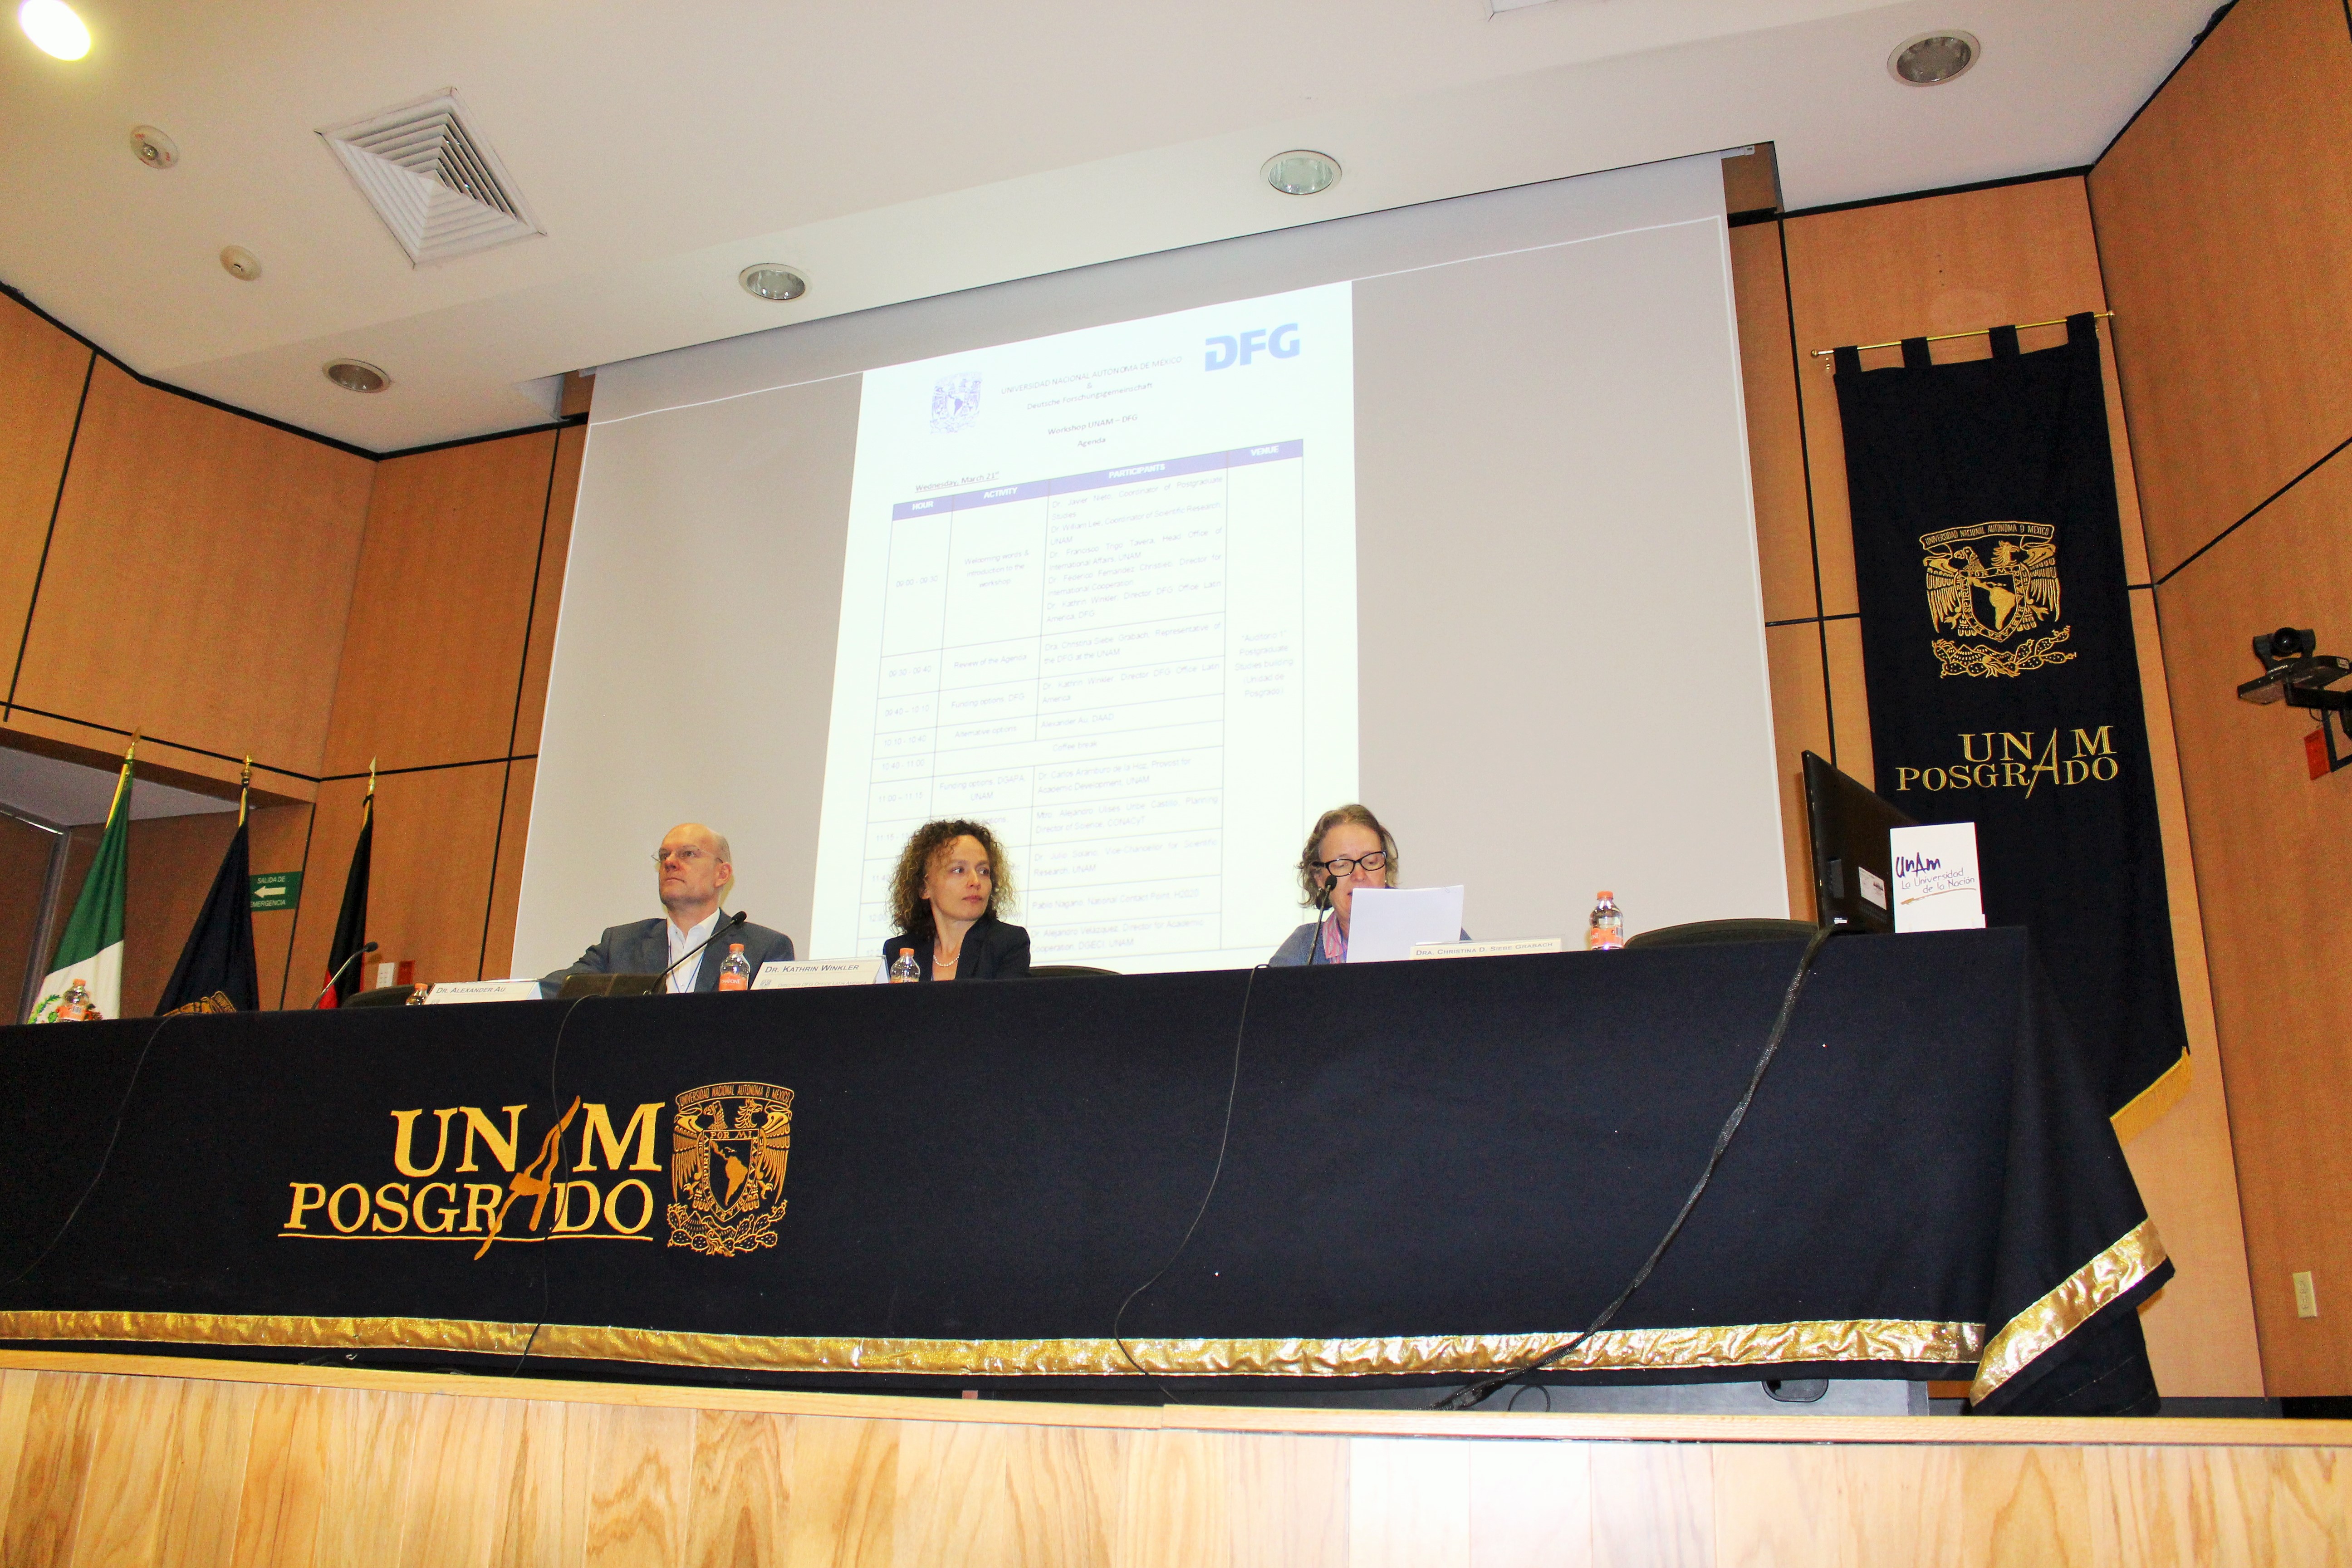 Al lado de Winkler (al centro), Alexander Au (DAAD) y Christina Siebe, representante académica de la DFG en México, también estuvieron presentes en el evento